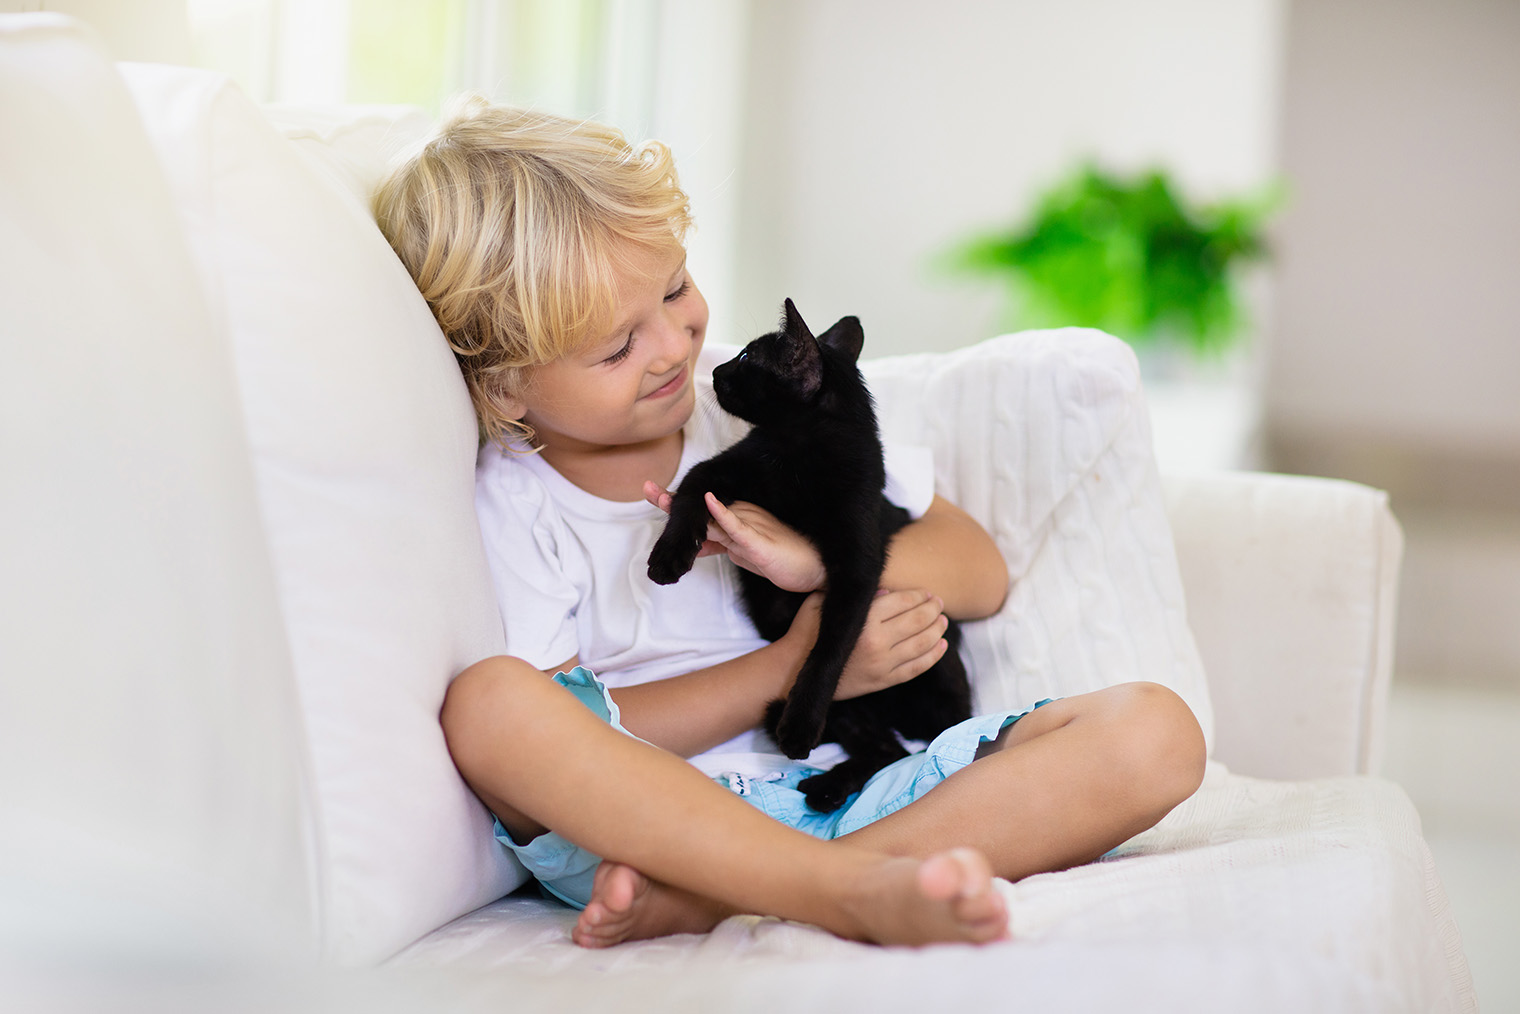 Покажите ребенку, как правильно держать животное: объясните, что у питомца должна быть возможность уйти с рук. Фотография: FamVeld /Shutterstock / FOTODOM